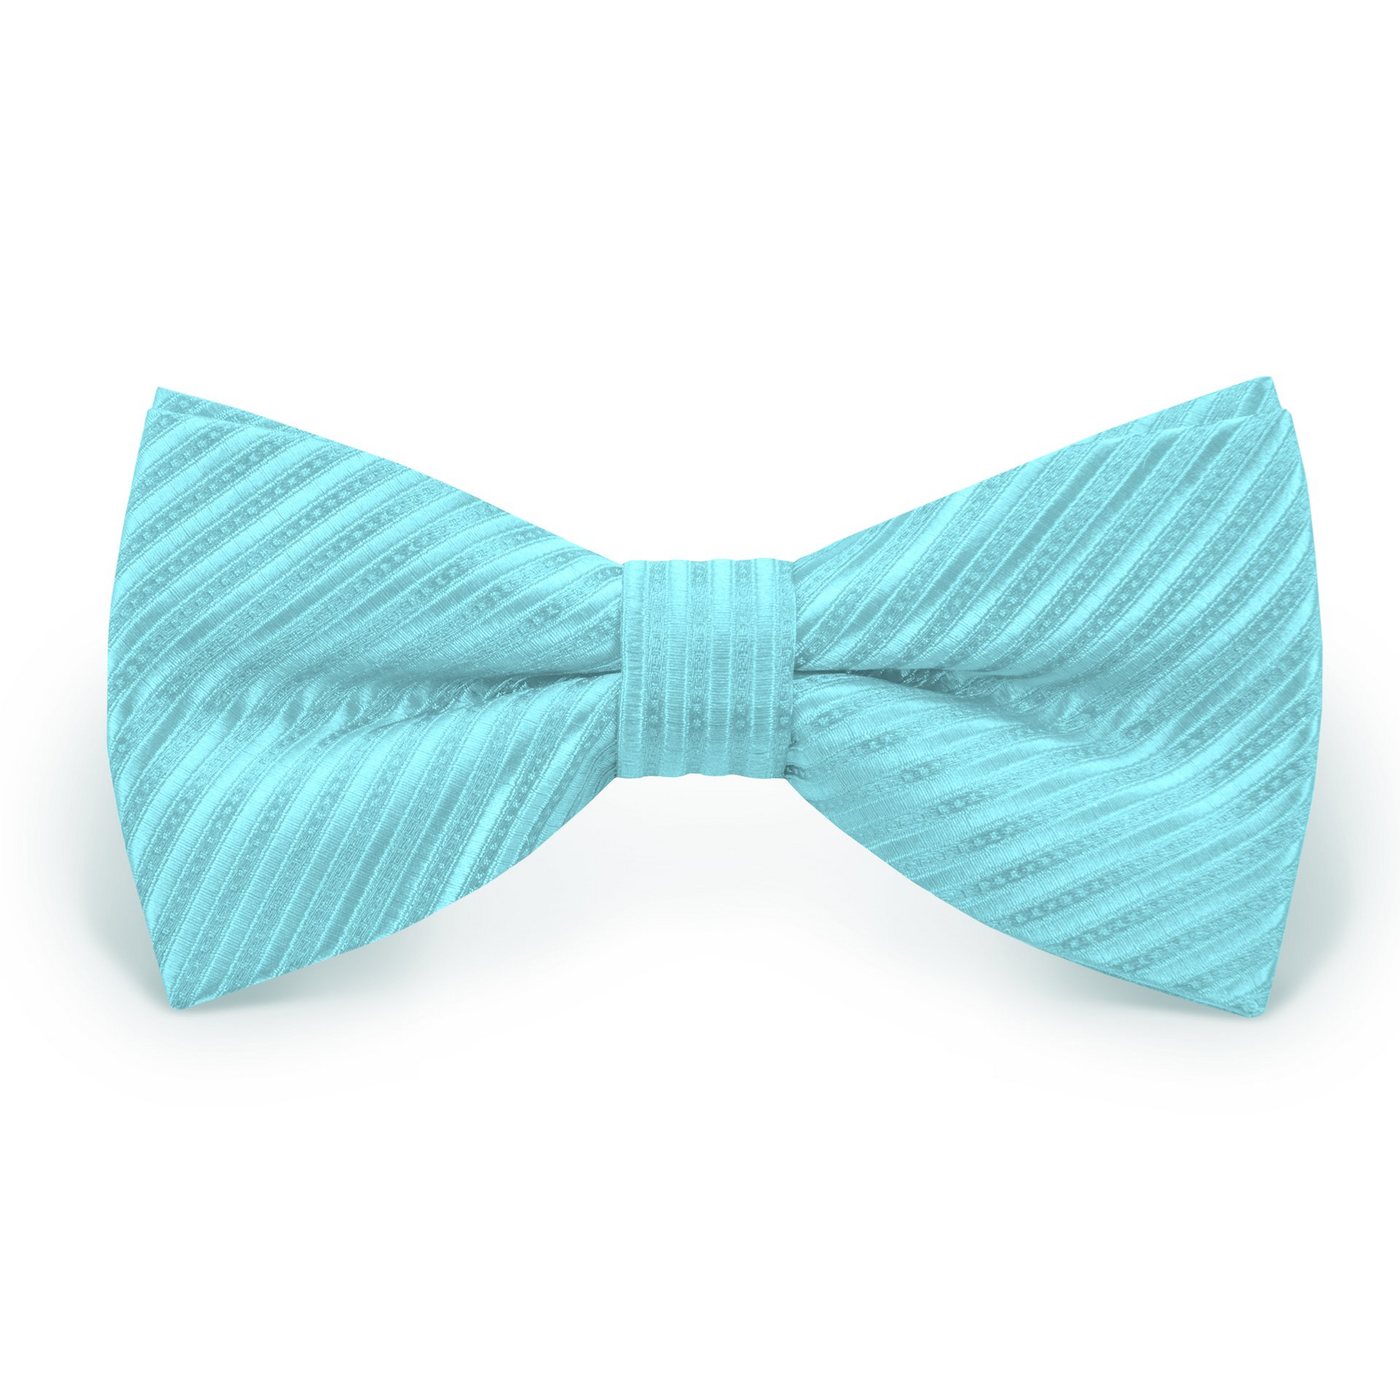 StickandShine Krawatte Gestreift Krawatte Fliege Einstecktuch 3 Teilig zur Wahl aus Polyester 5 cm Breite / 148 cm Länge Einfarbig modern für Hochzeit Anzug gestreift von StickandShine